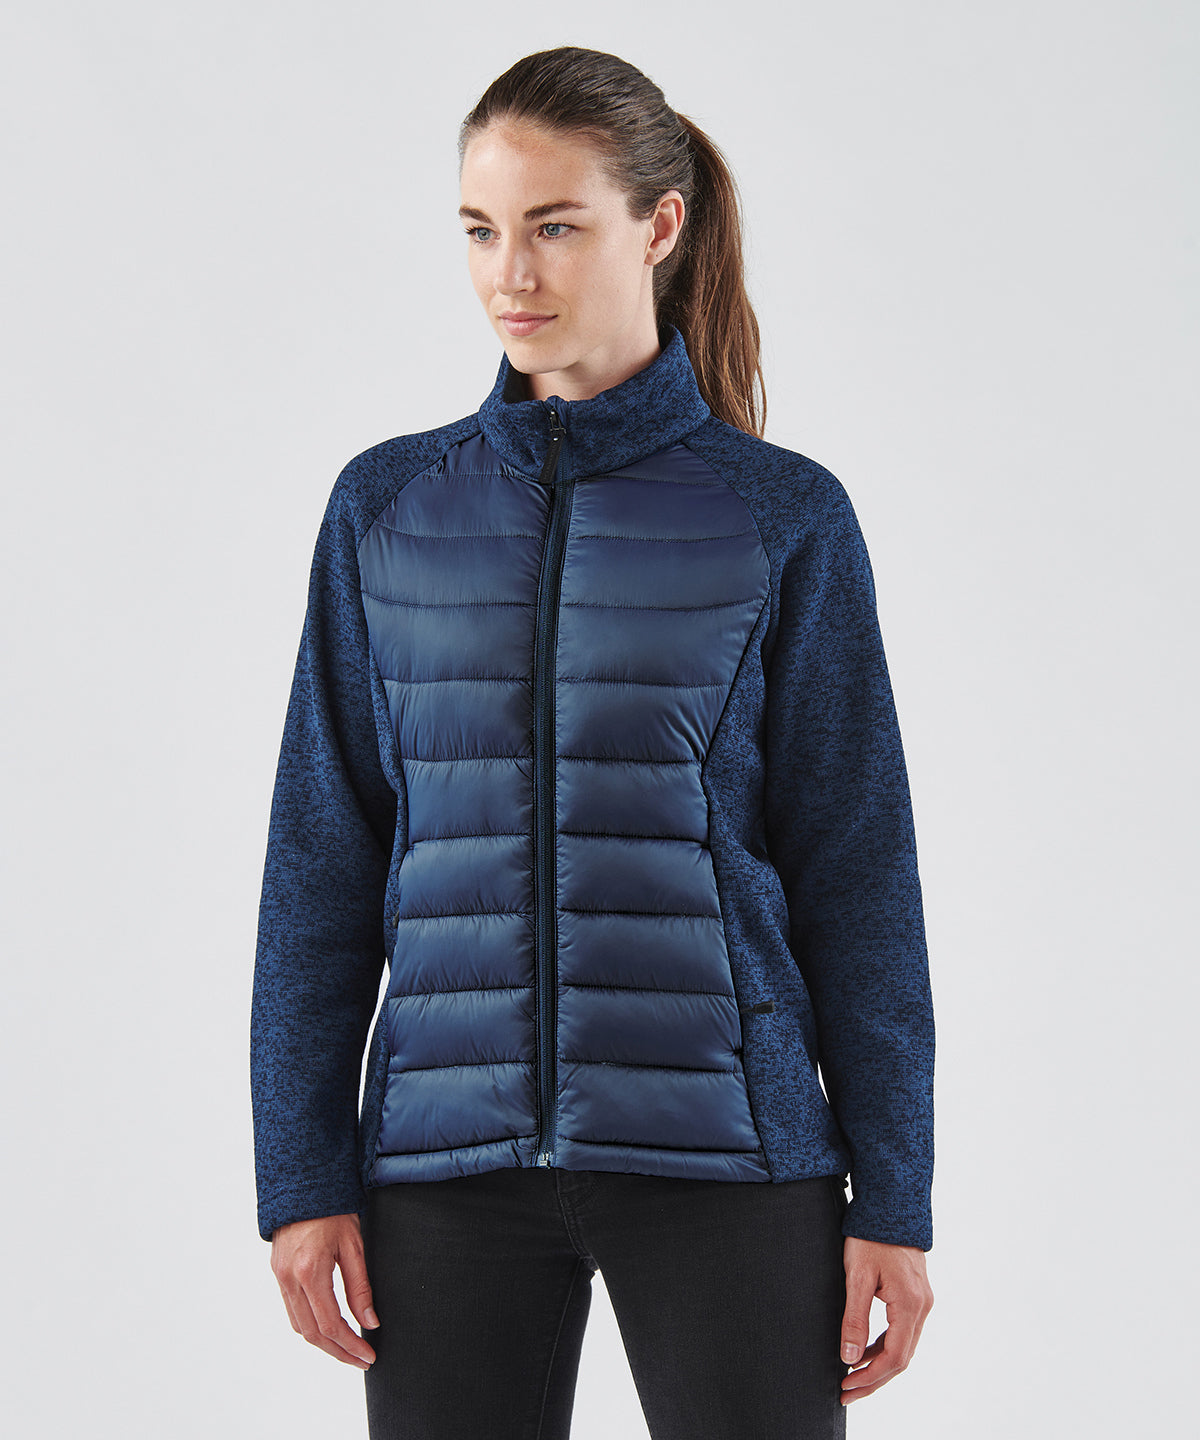 Jakkar - Women’s Narvik Hybrid Jacket